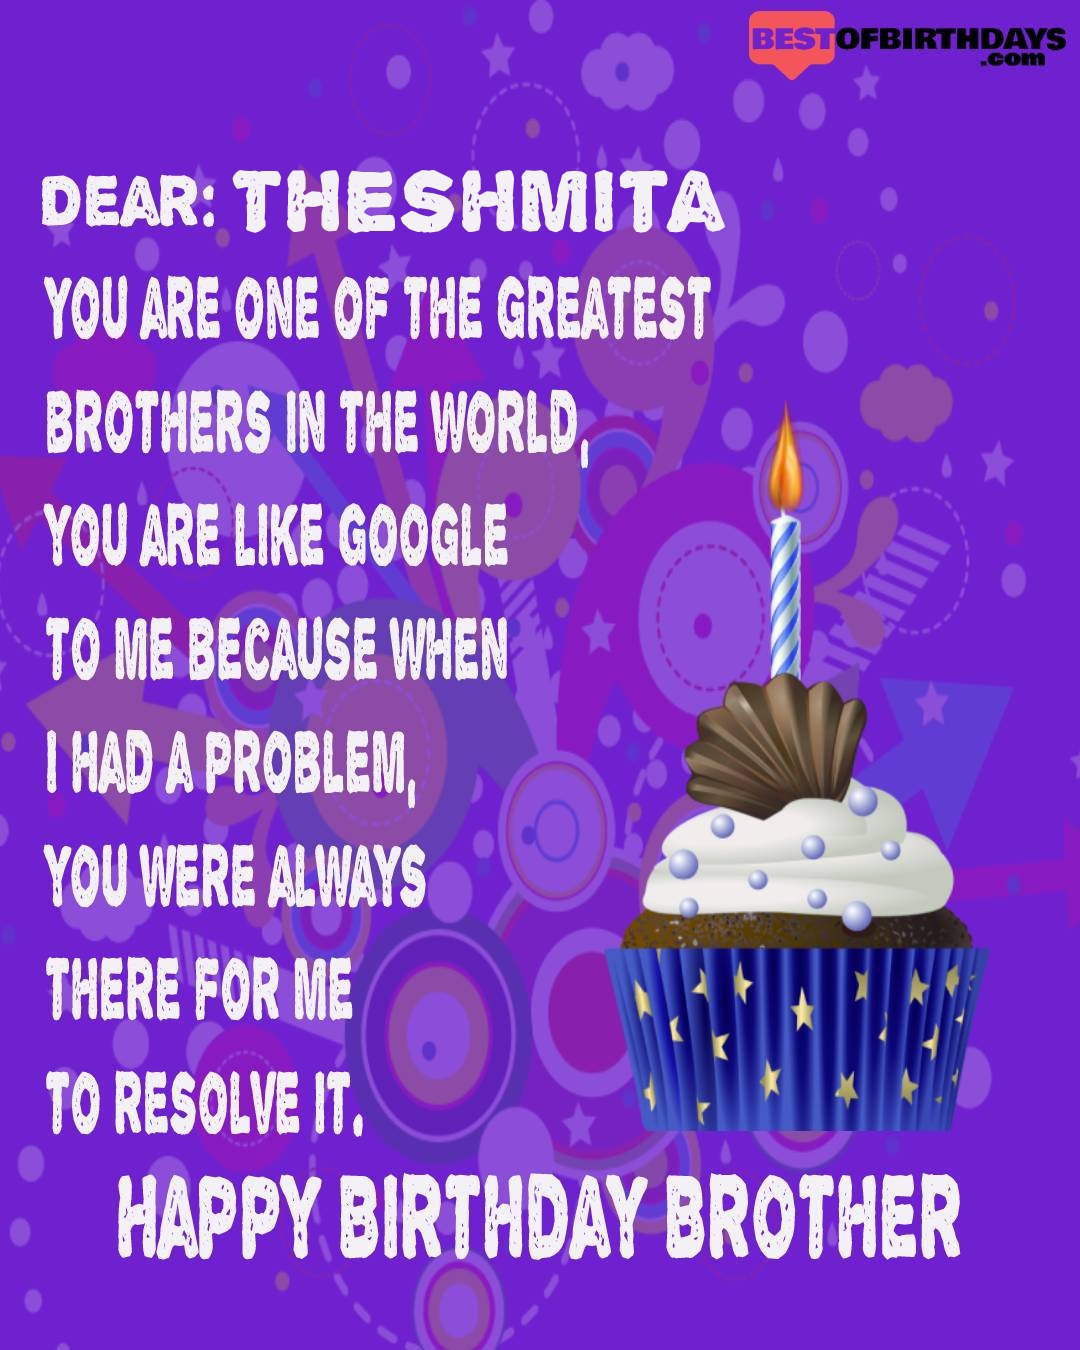 Happy birthday theshmita bhai brother bro